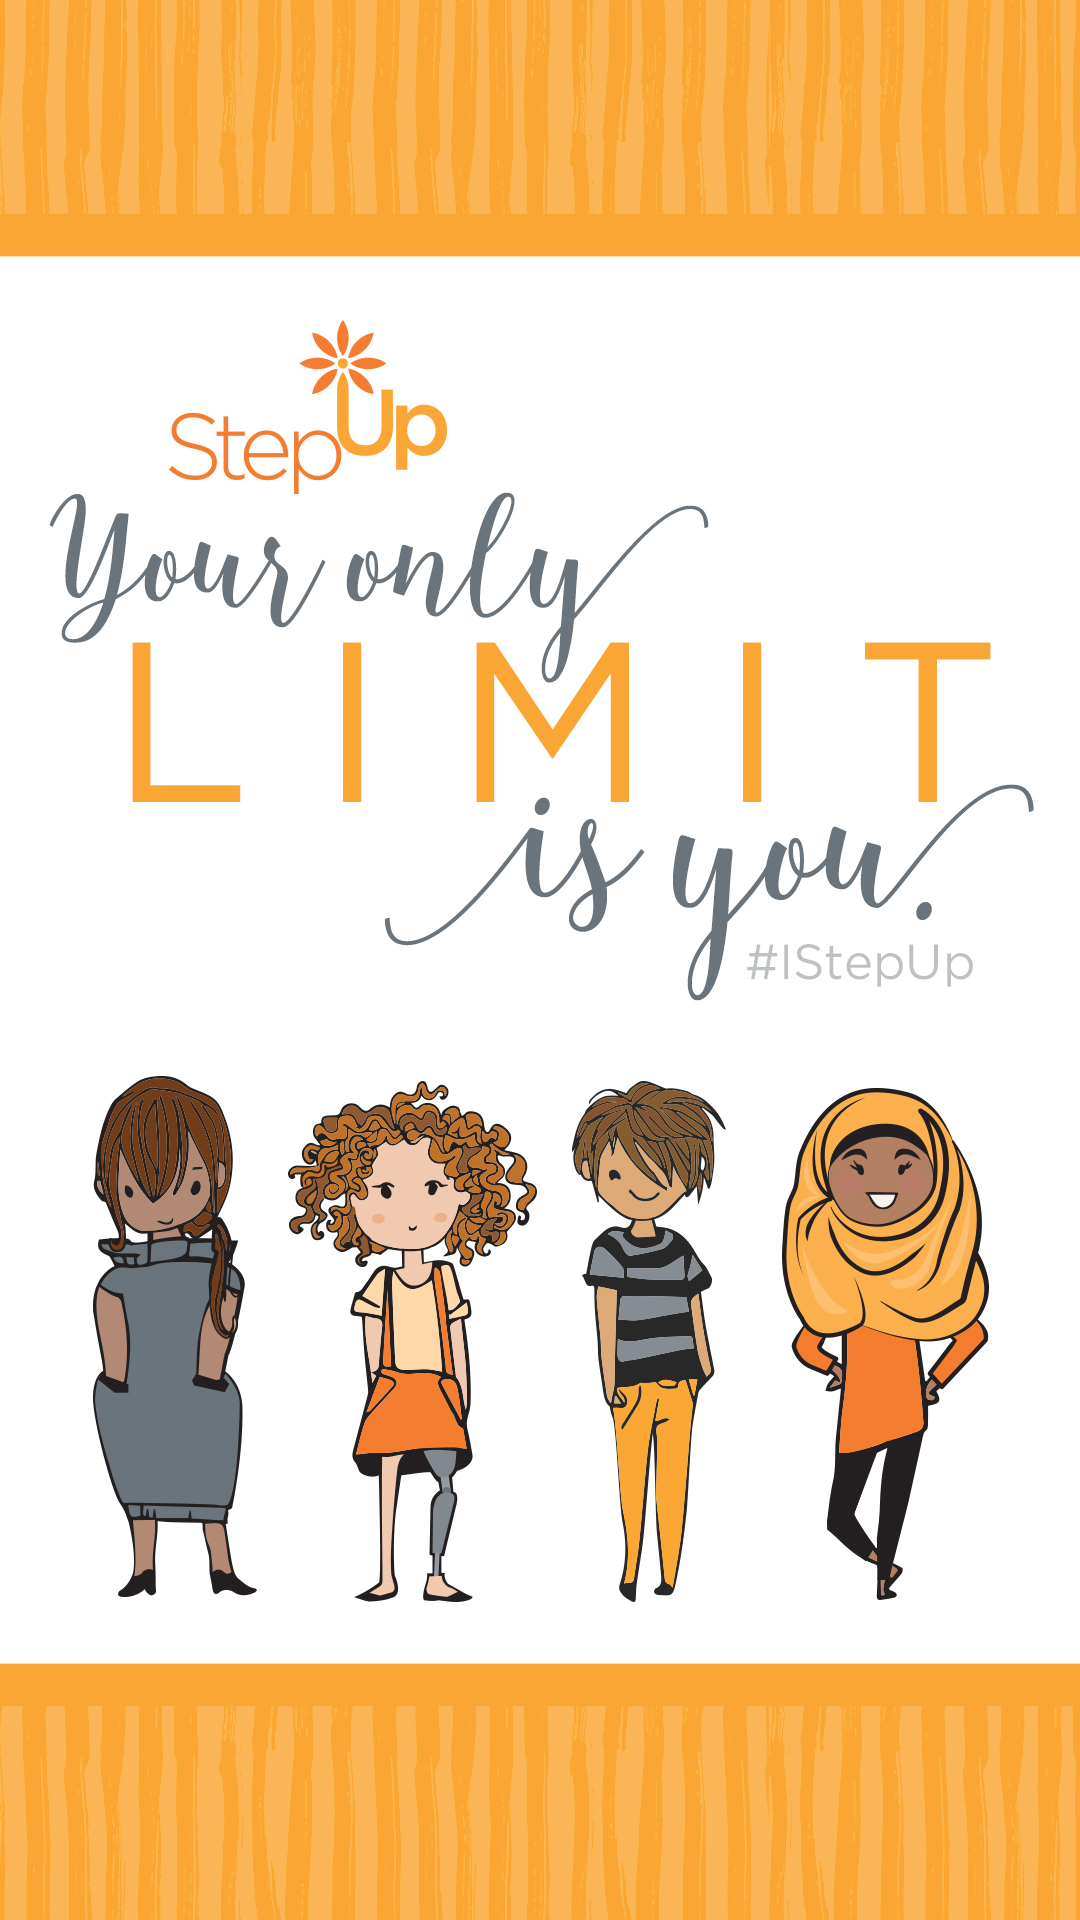 Step Up Women's Network - HD Wallpaper 